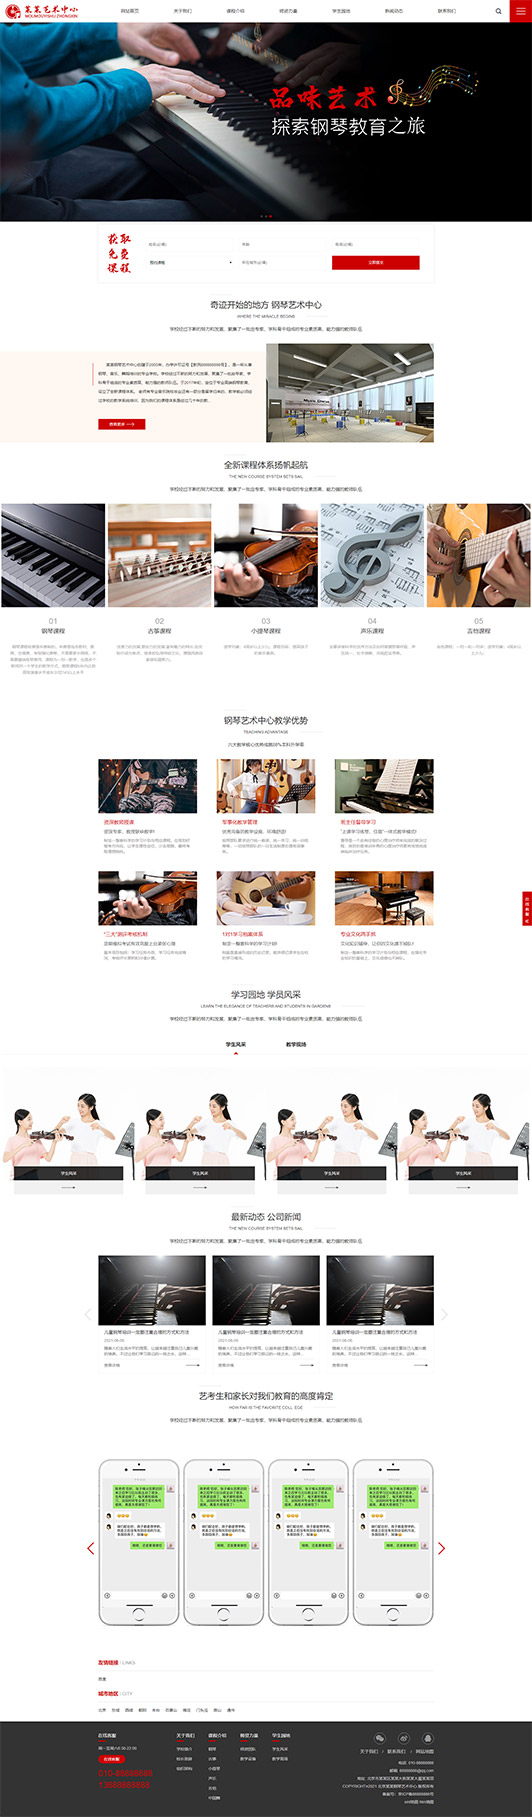 江苏钢琴艺术培训公司响应式企业网站